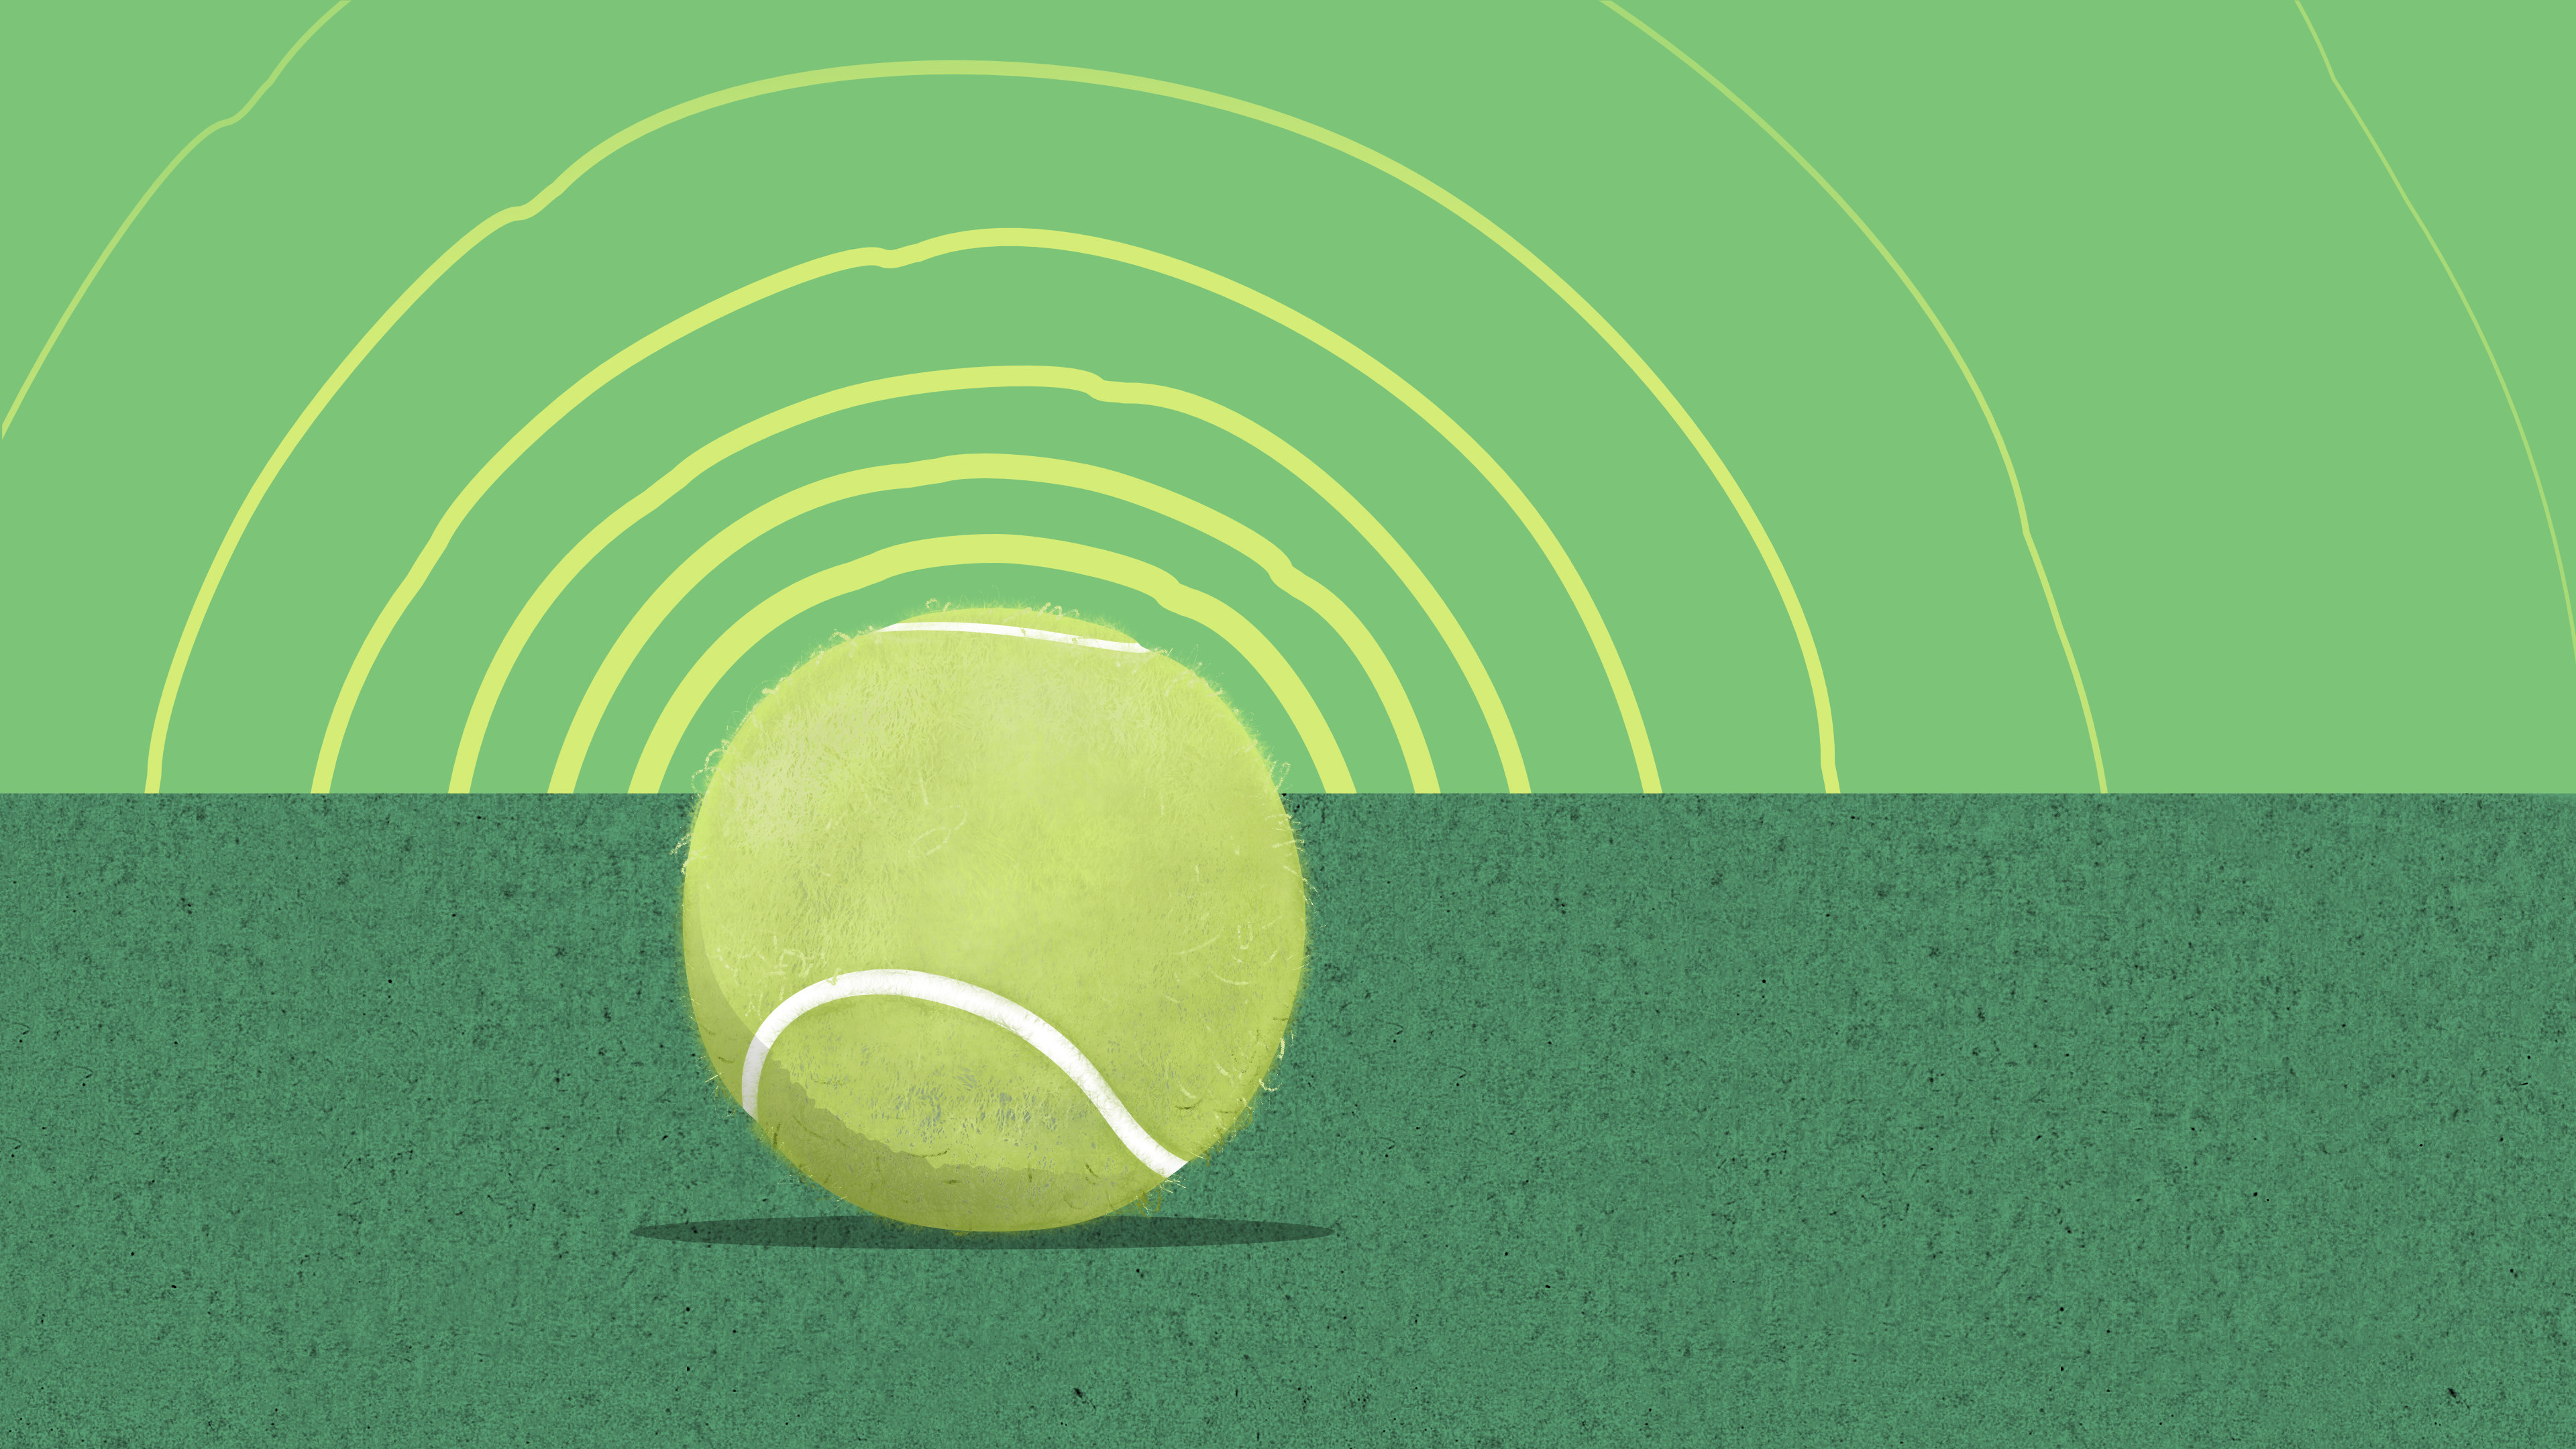 20.02 Tennis ball